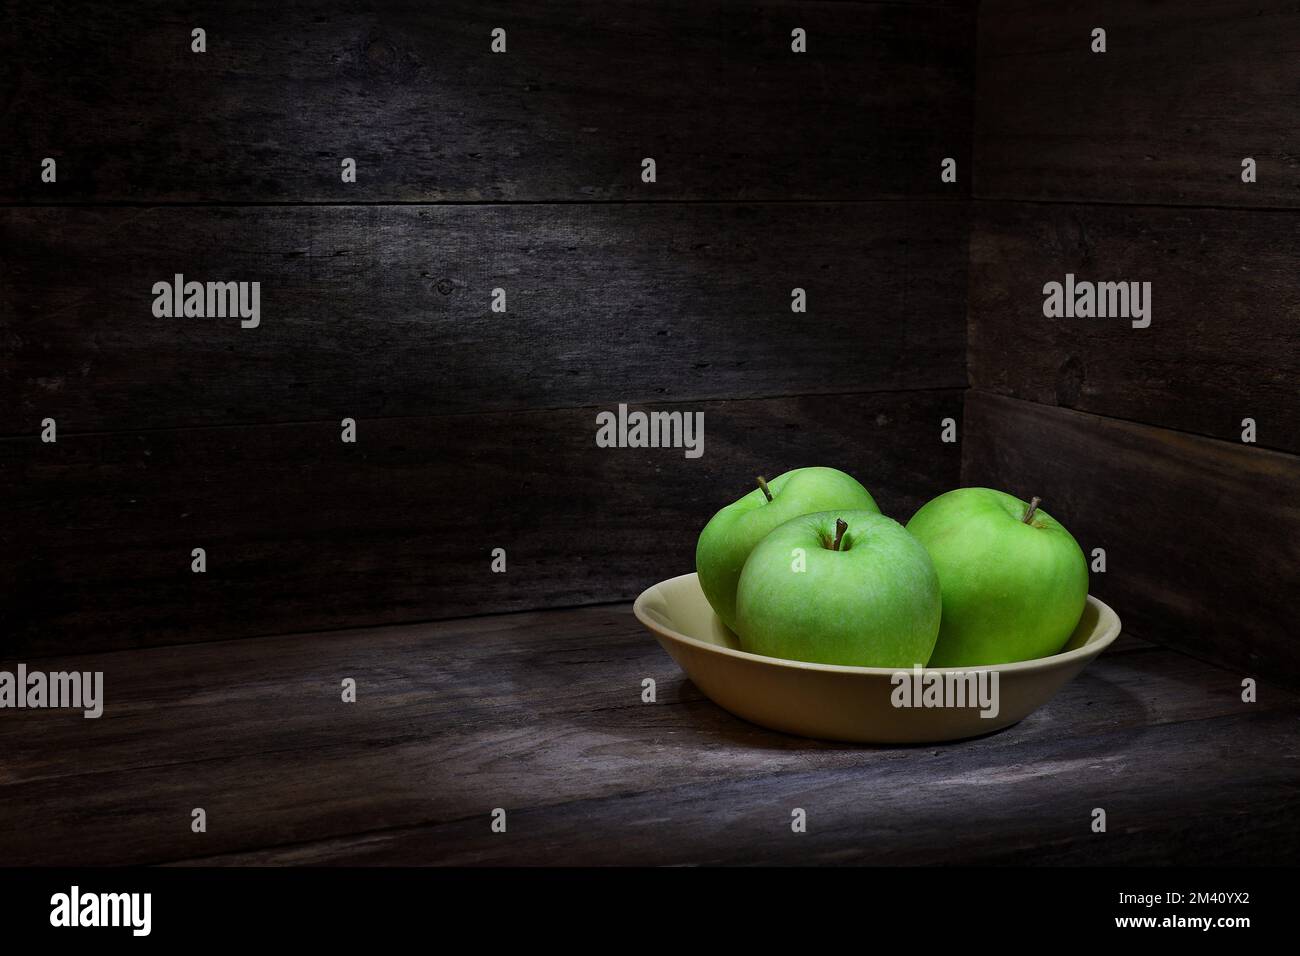 Una escena rústica de tres manzanas verdes Granny Smith en un tazón amarillo en una caja de madera que rodea con iluminación de humor oscuro; capturado en un estudio Foto de stock